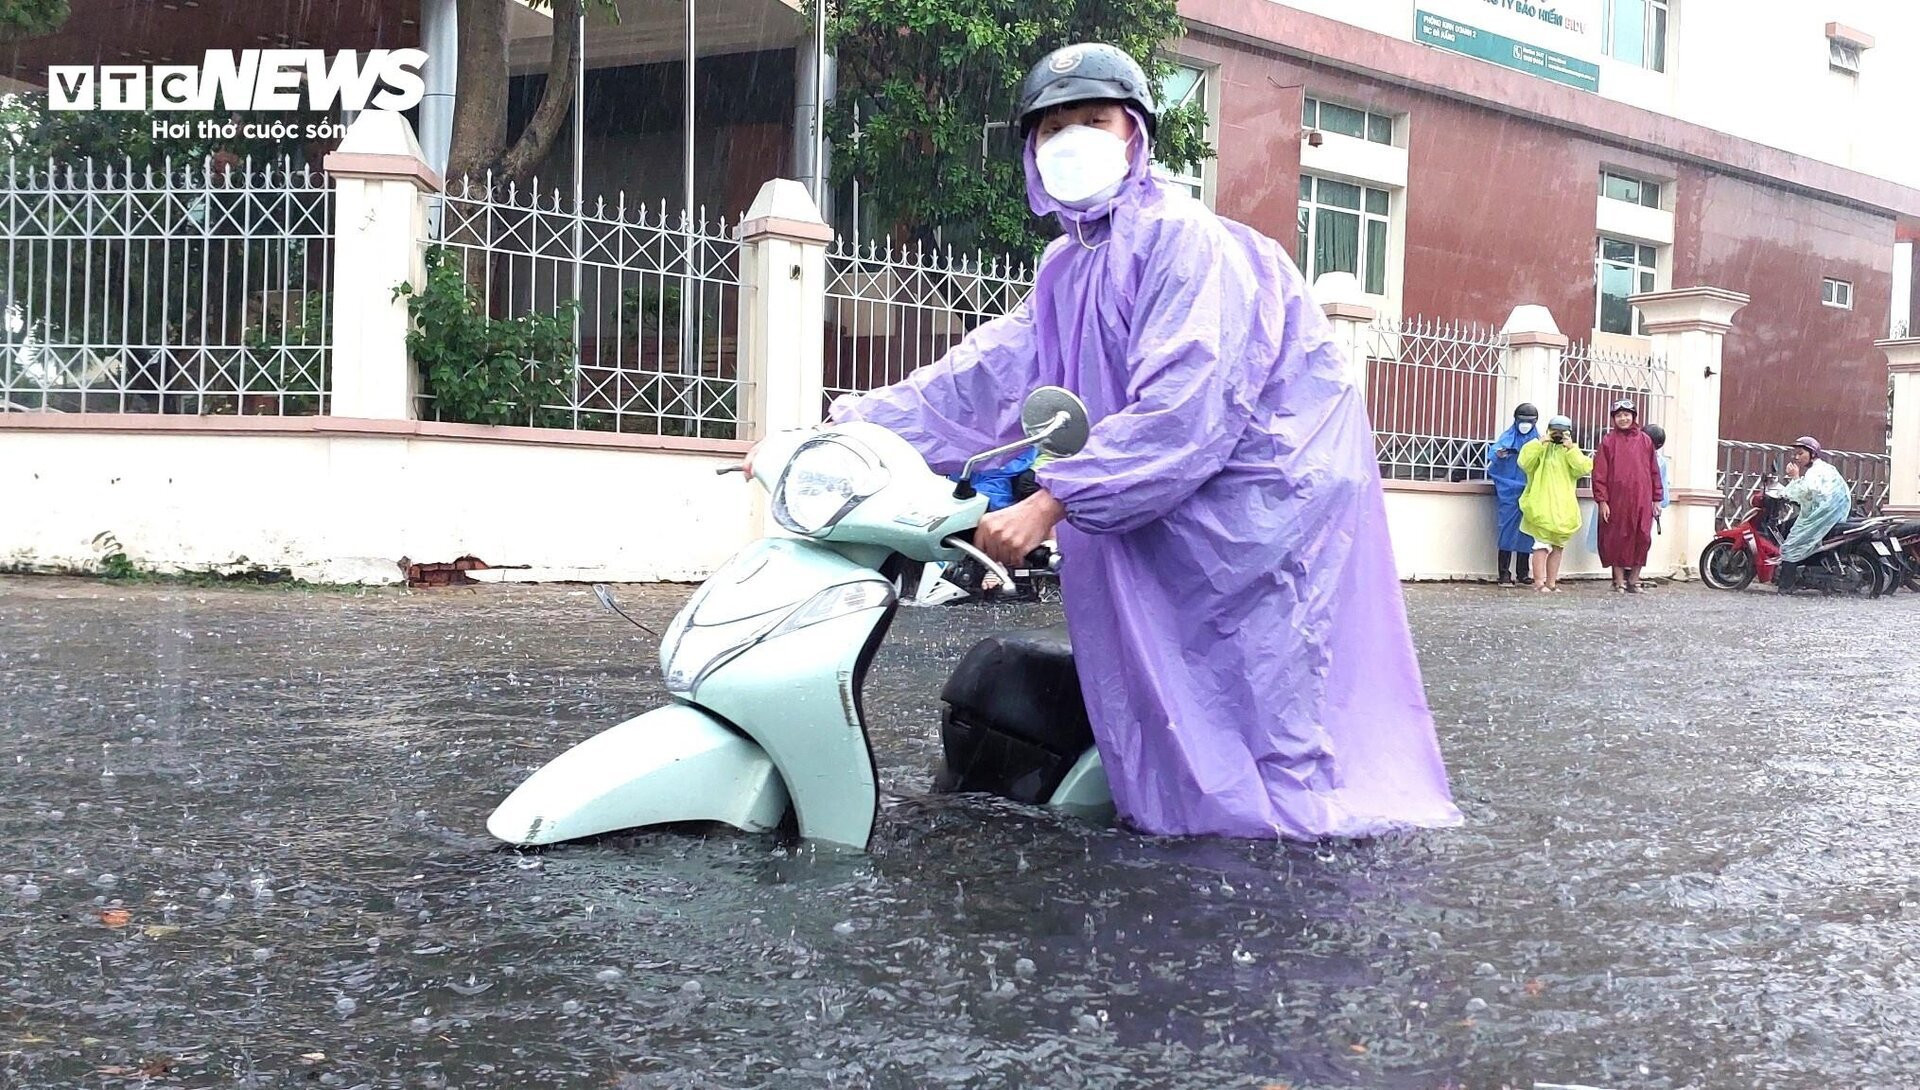 Đường phố Đà Nẵng thành sông sau mưa lớn, dân khổ sở đẩy xe giữa biển nước  - 5